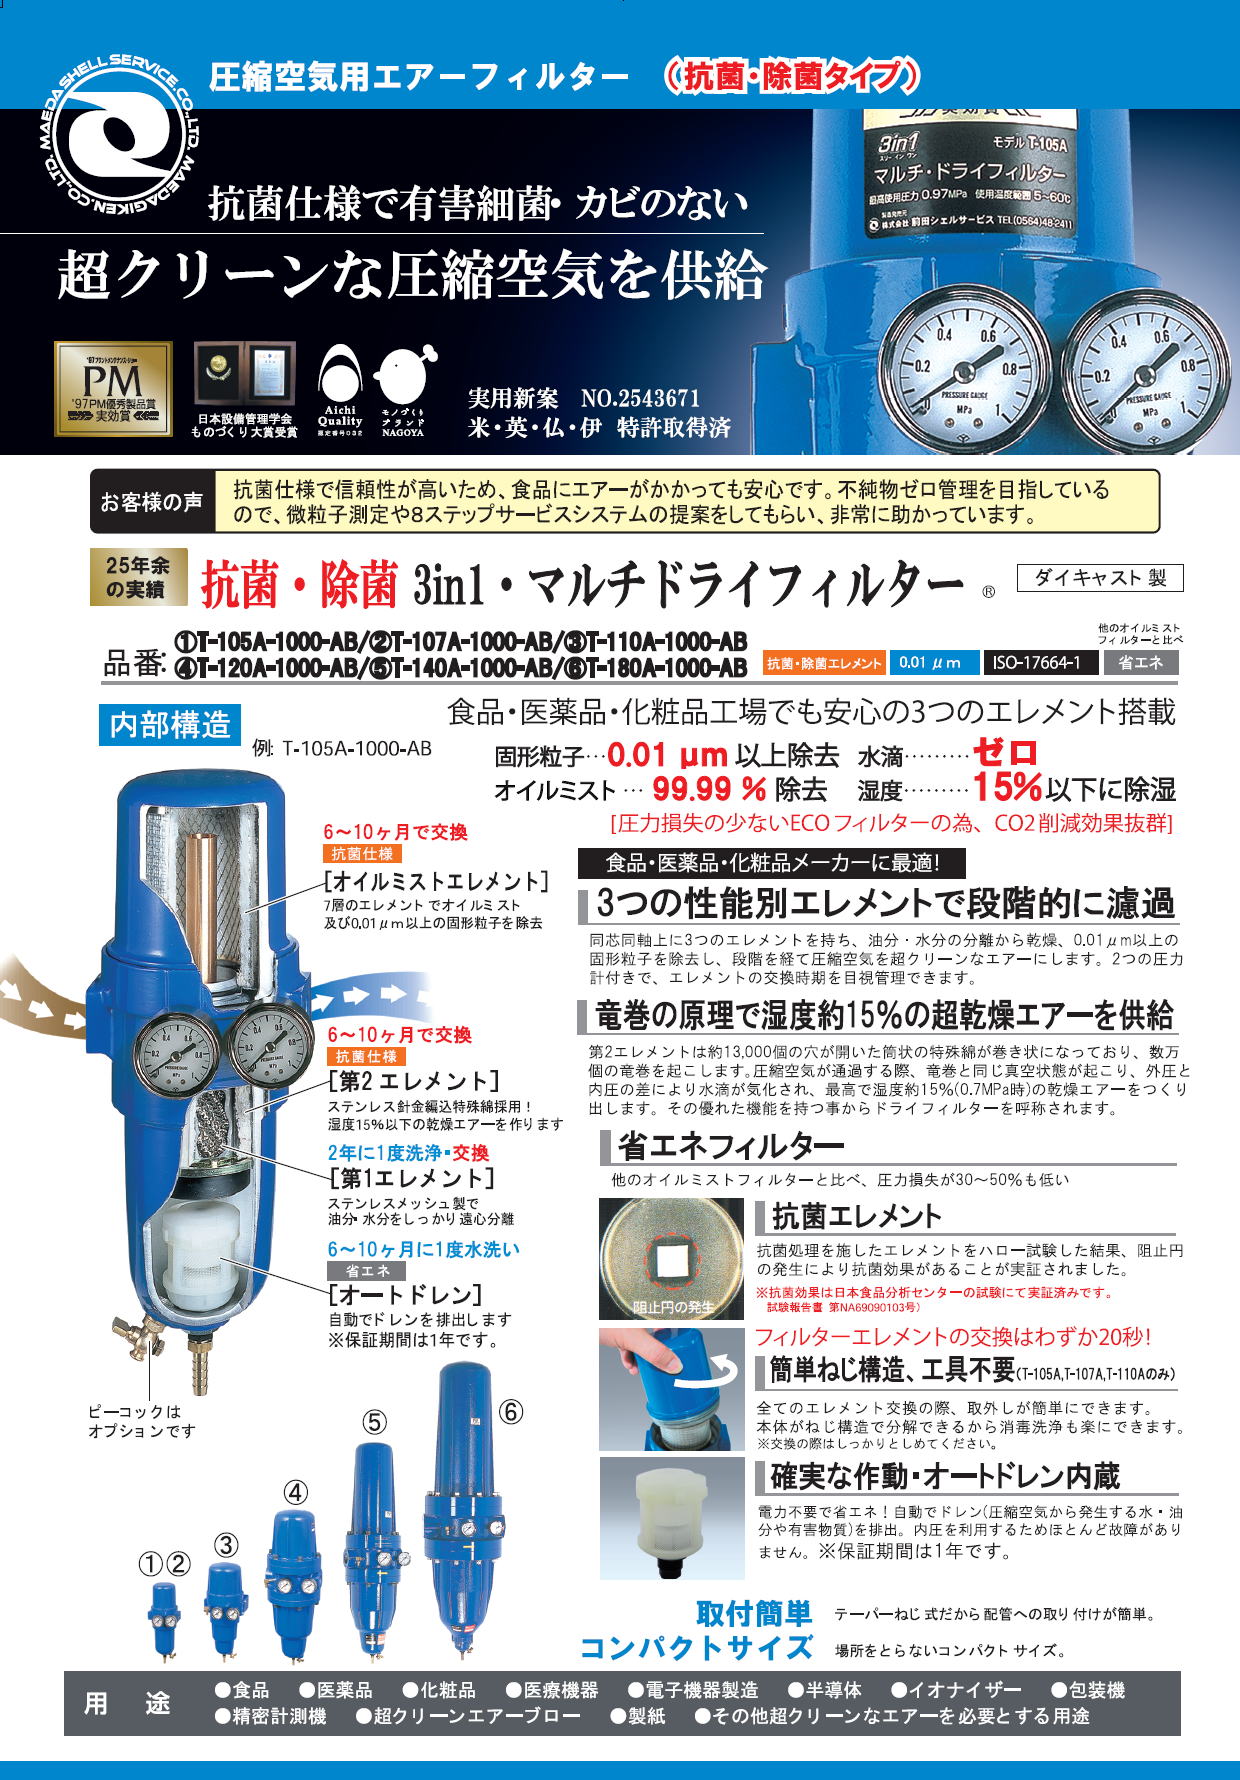 前田シェルサービス 抗菌3in1・マルチドライフィルター 圧縮空気用 